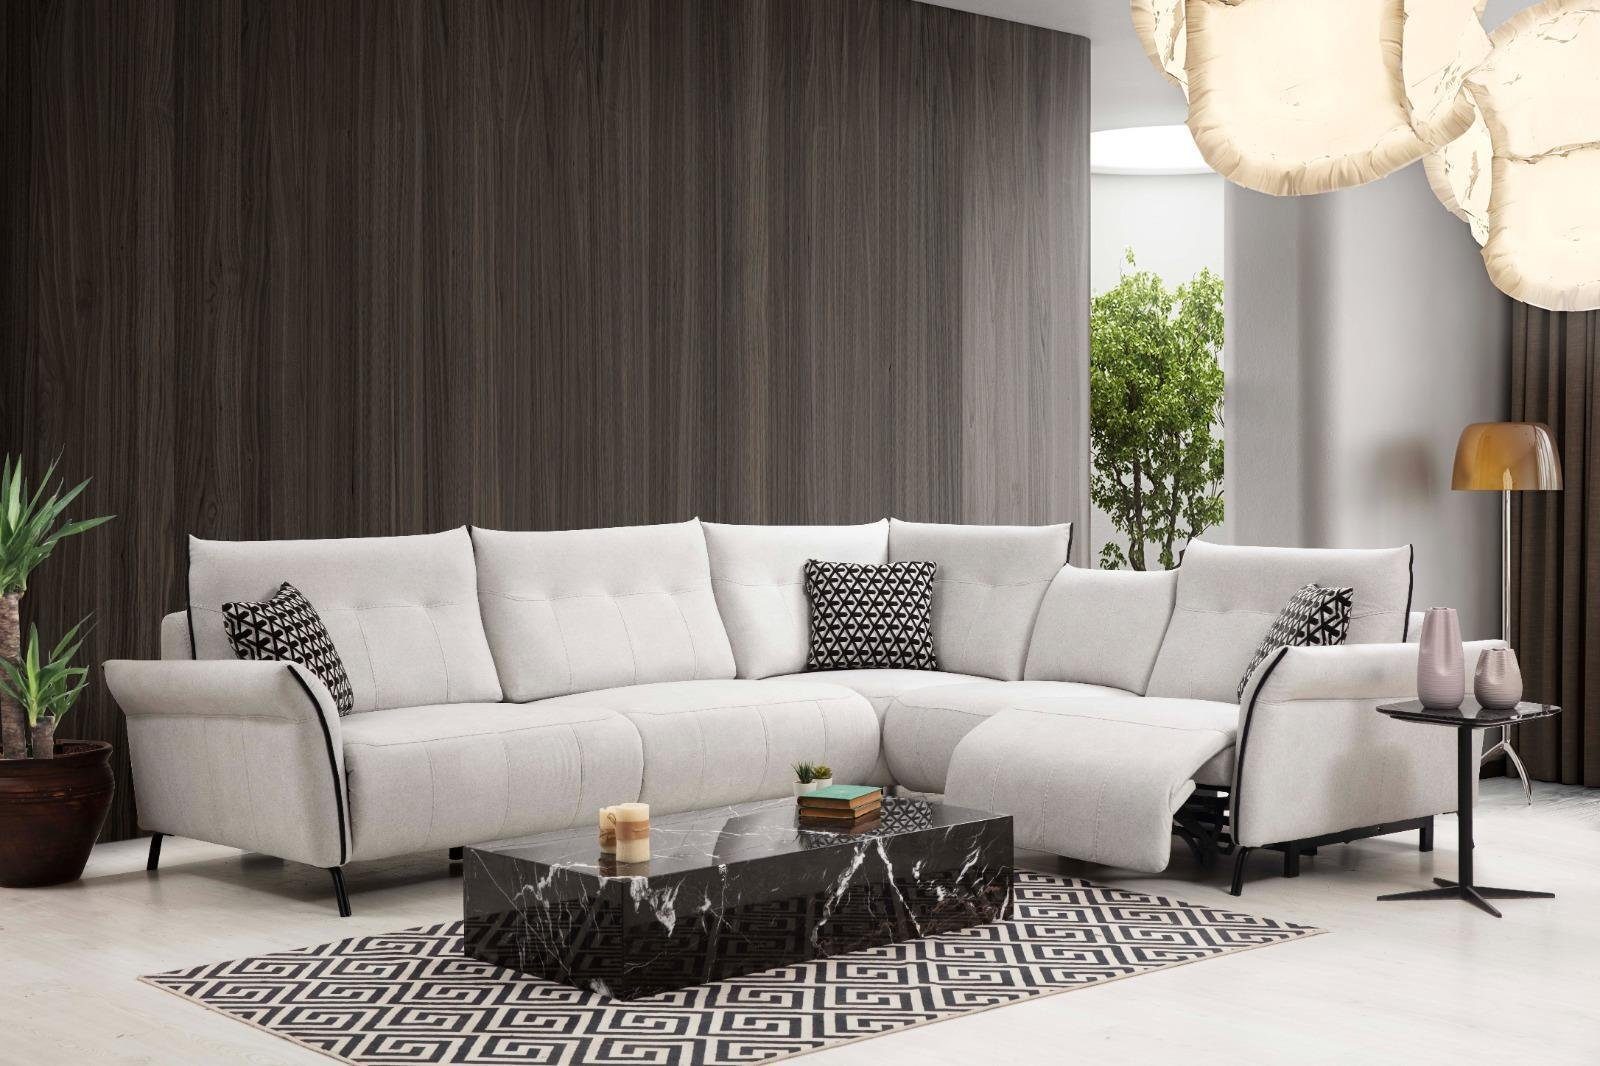 JVmoebel Ecksofa Ecksofa Wohnzimmer Sofa Couch Polster Textil Möbel Modern Designer Neu, 5 Teile, Made in Europa